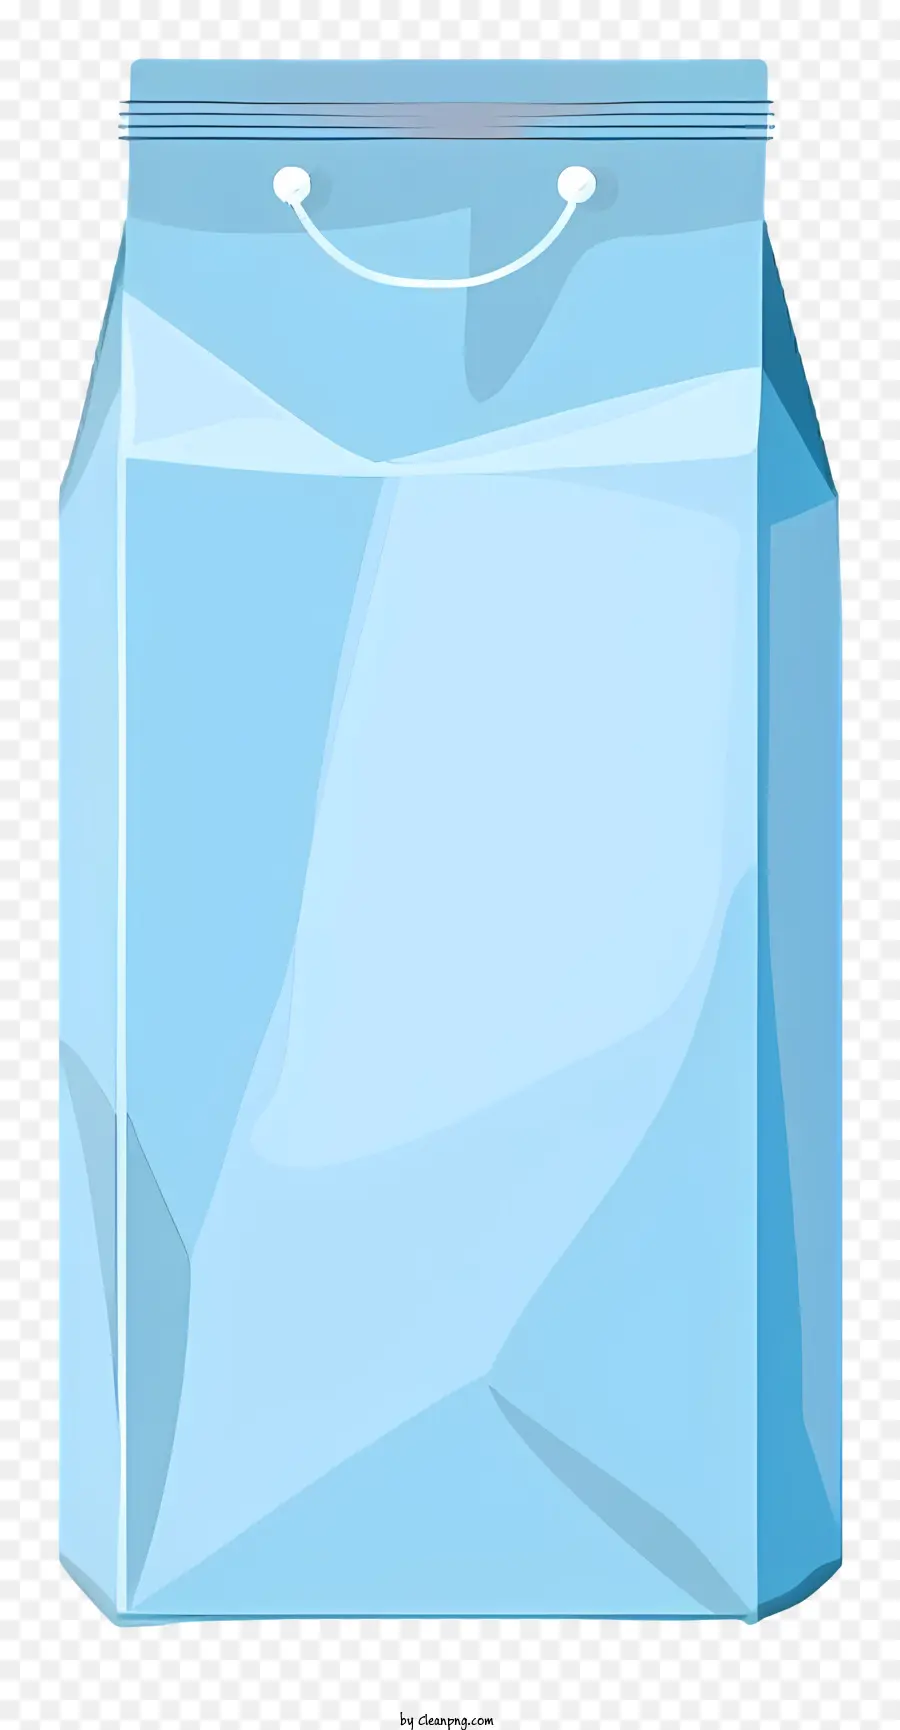 Milch Tetra Pack Blau Plastiktütenkordelgrad Made in Japan Transparent Bag - Blaue Plastiktüte mit 